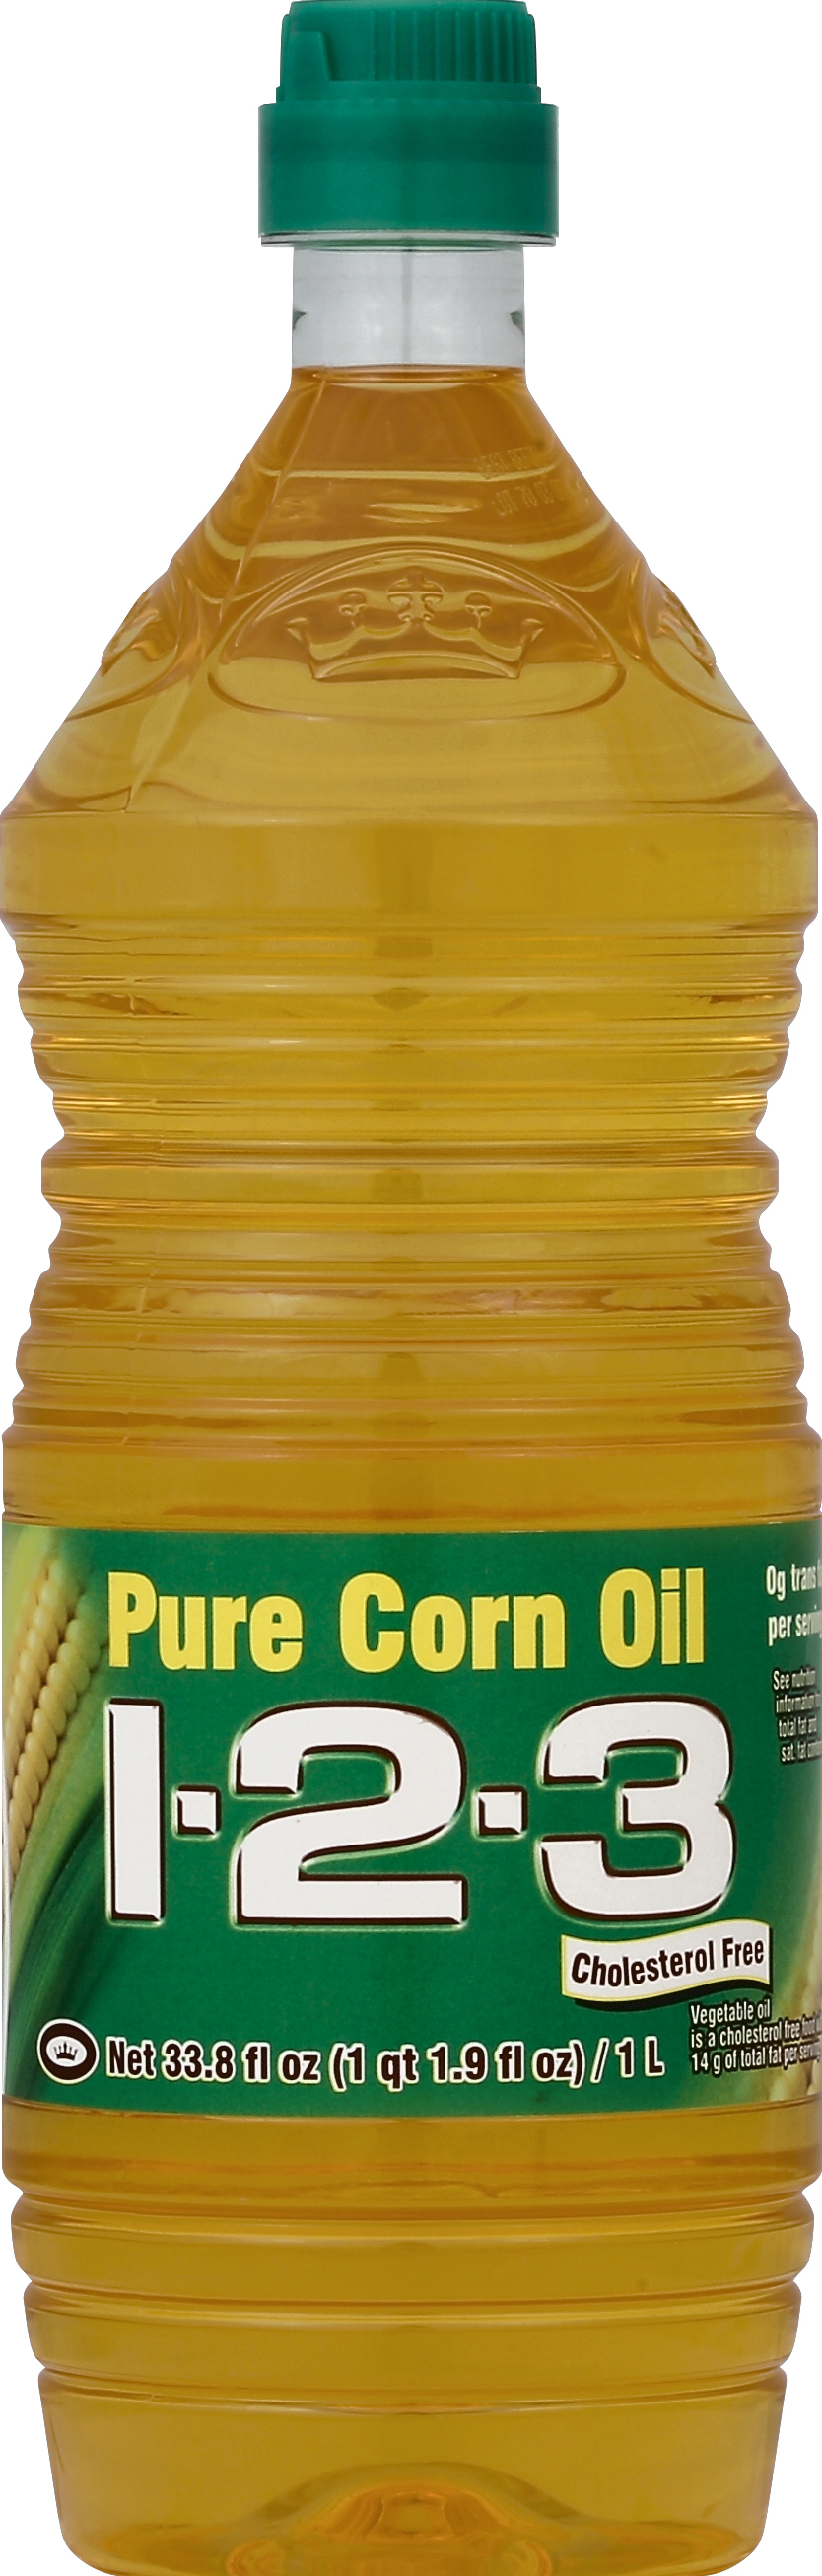 123 corn oil33.8oz